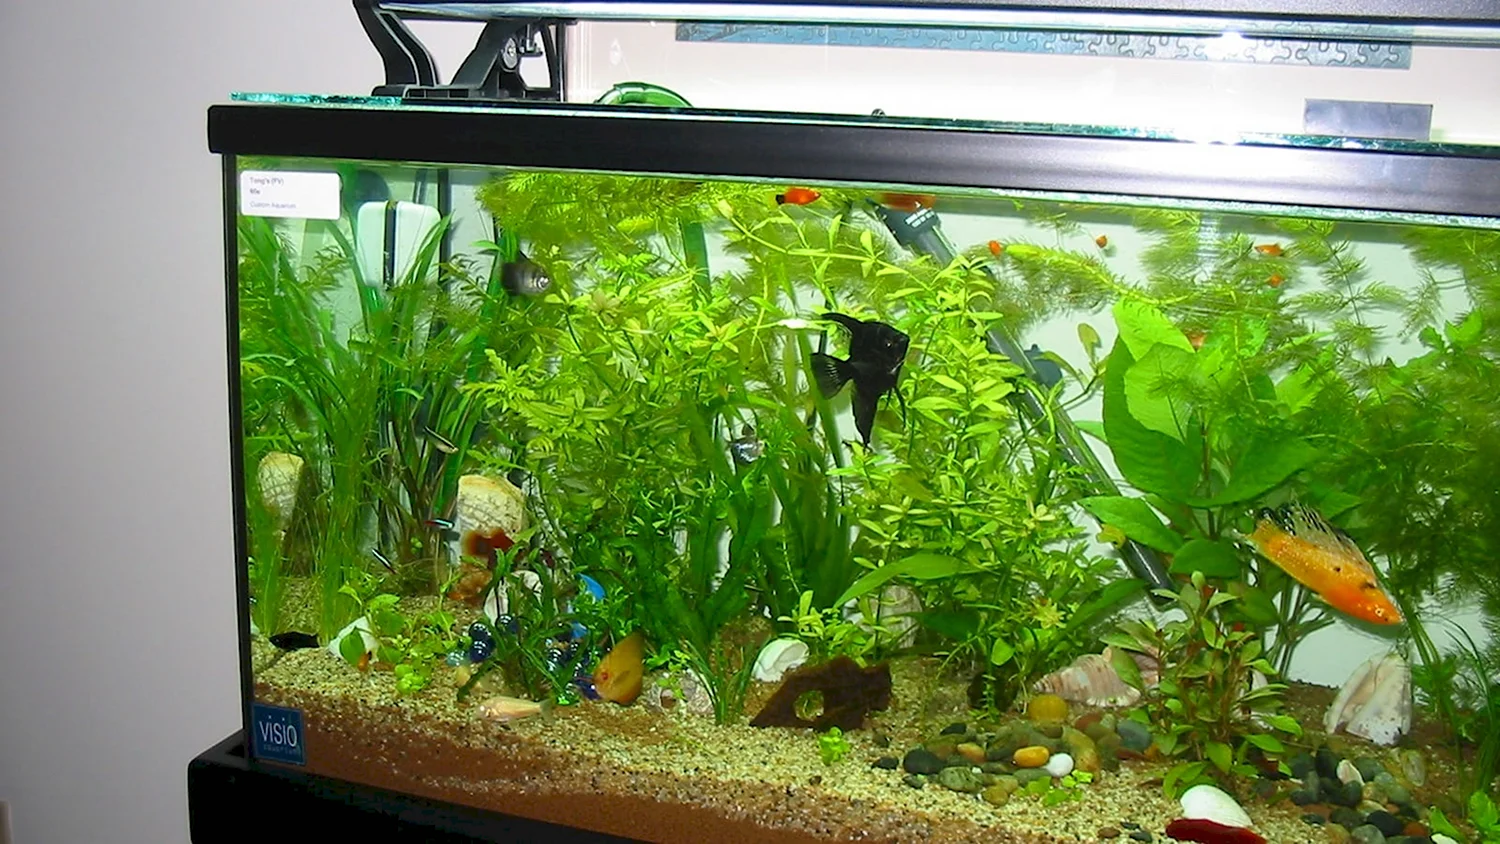 Домашний аквариум